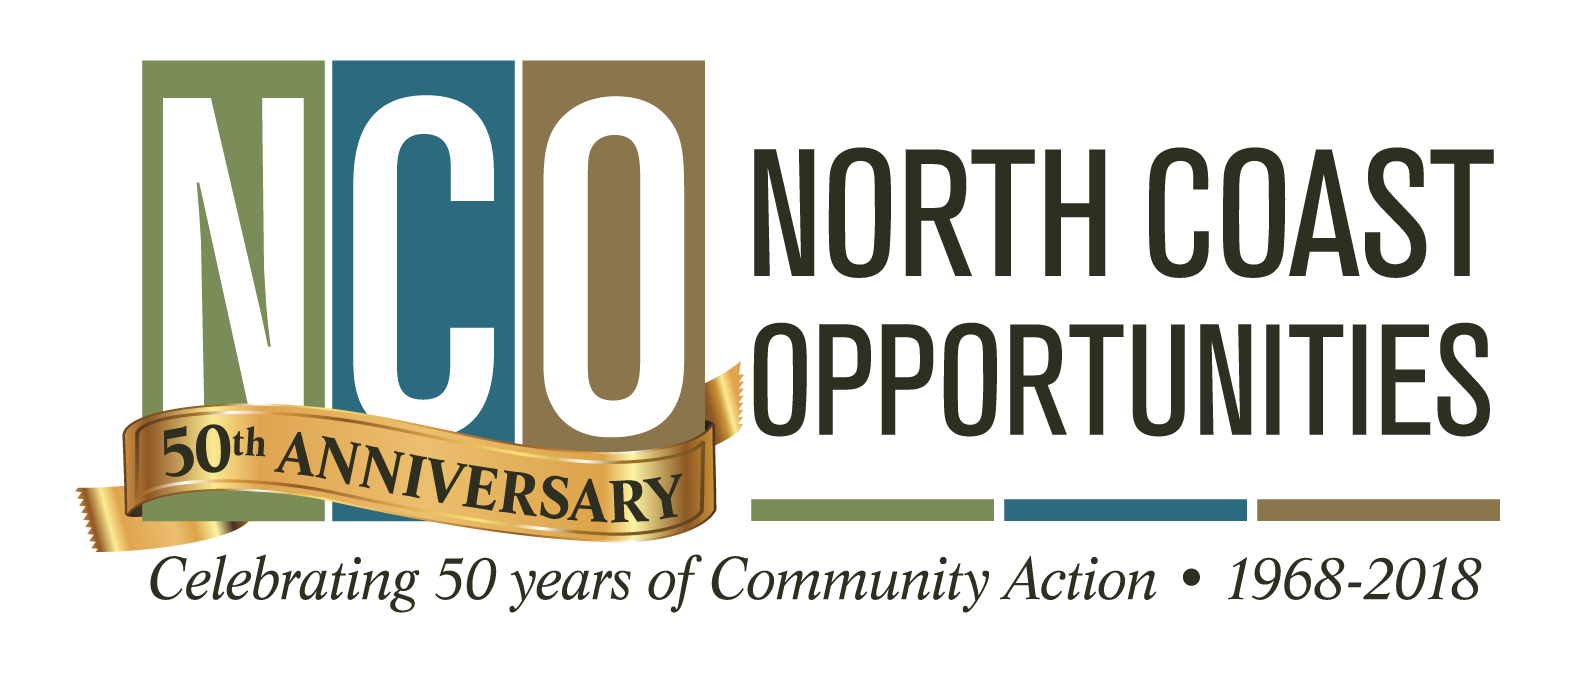 NCO Logo